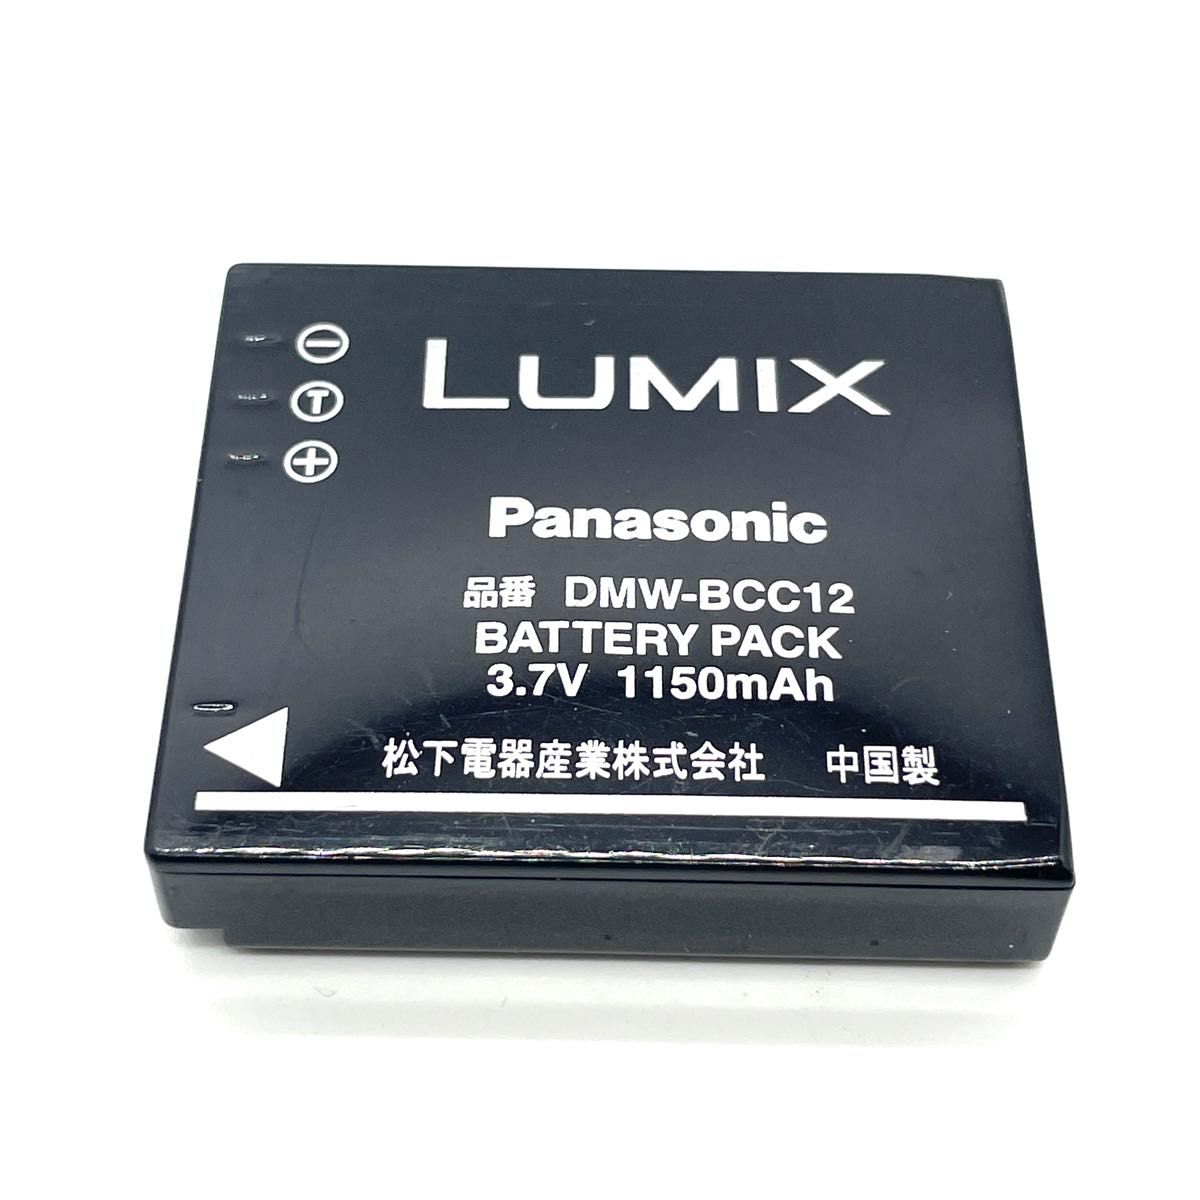 Lumix DMW-BCC12